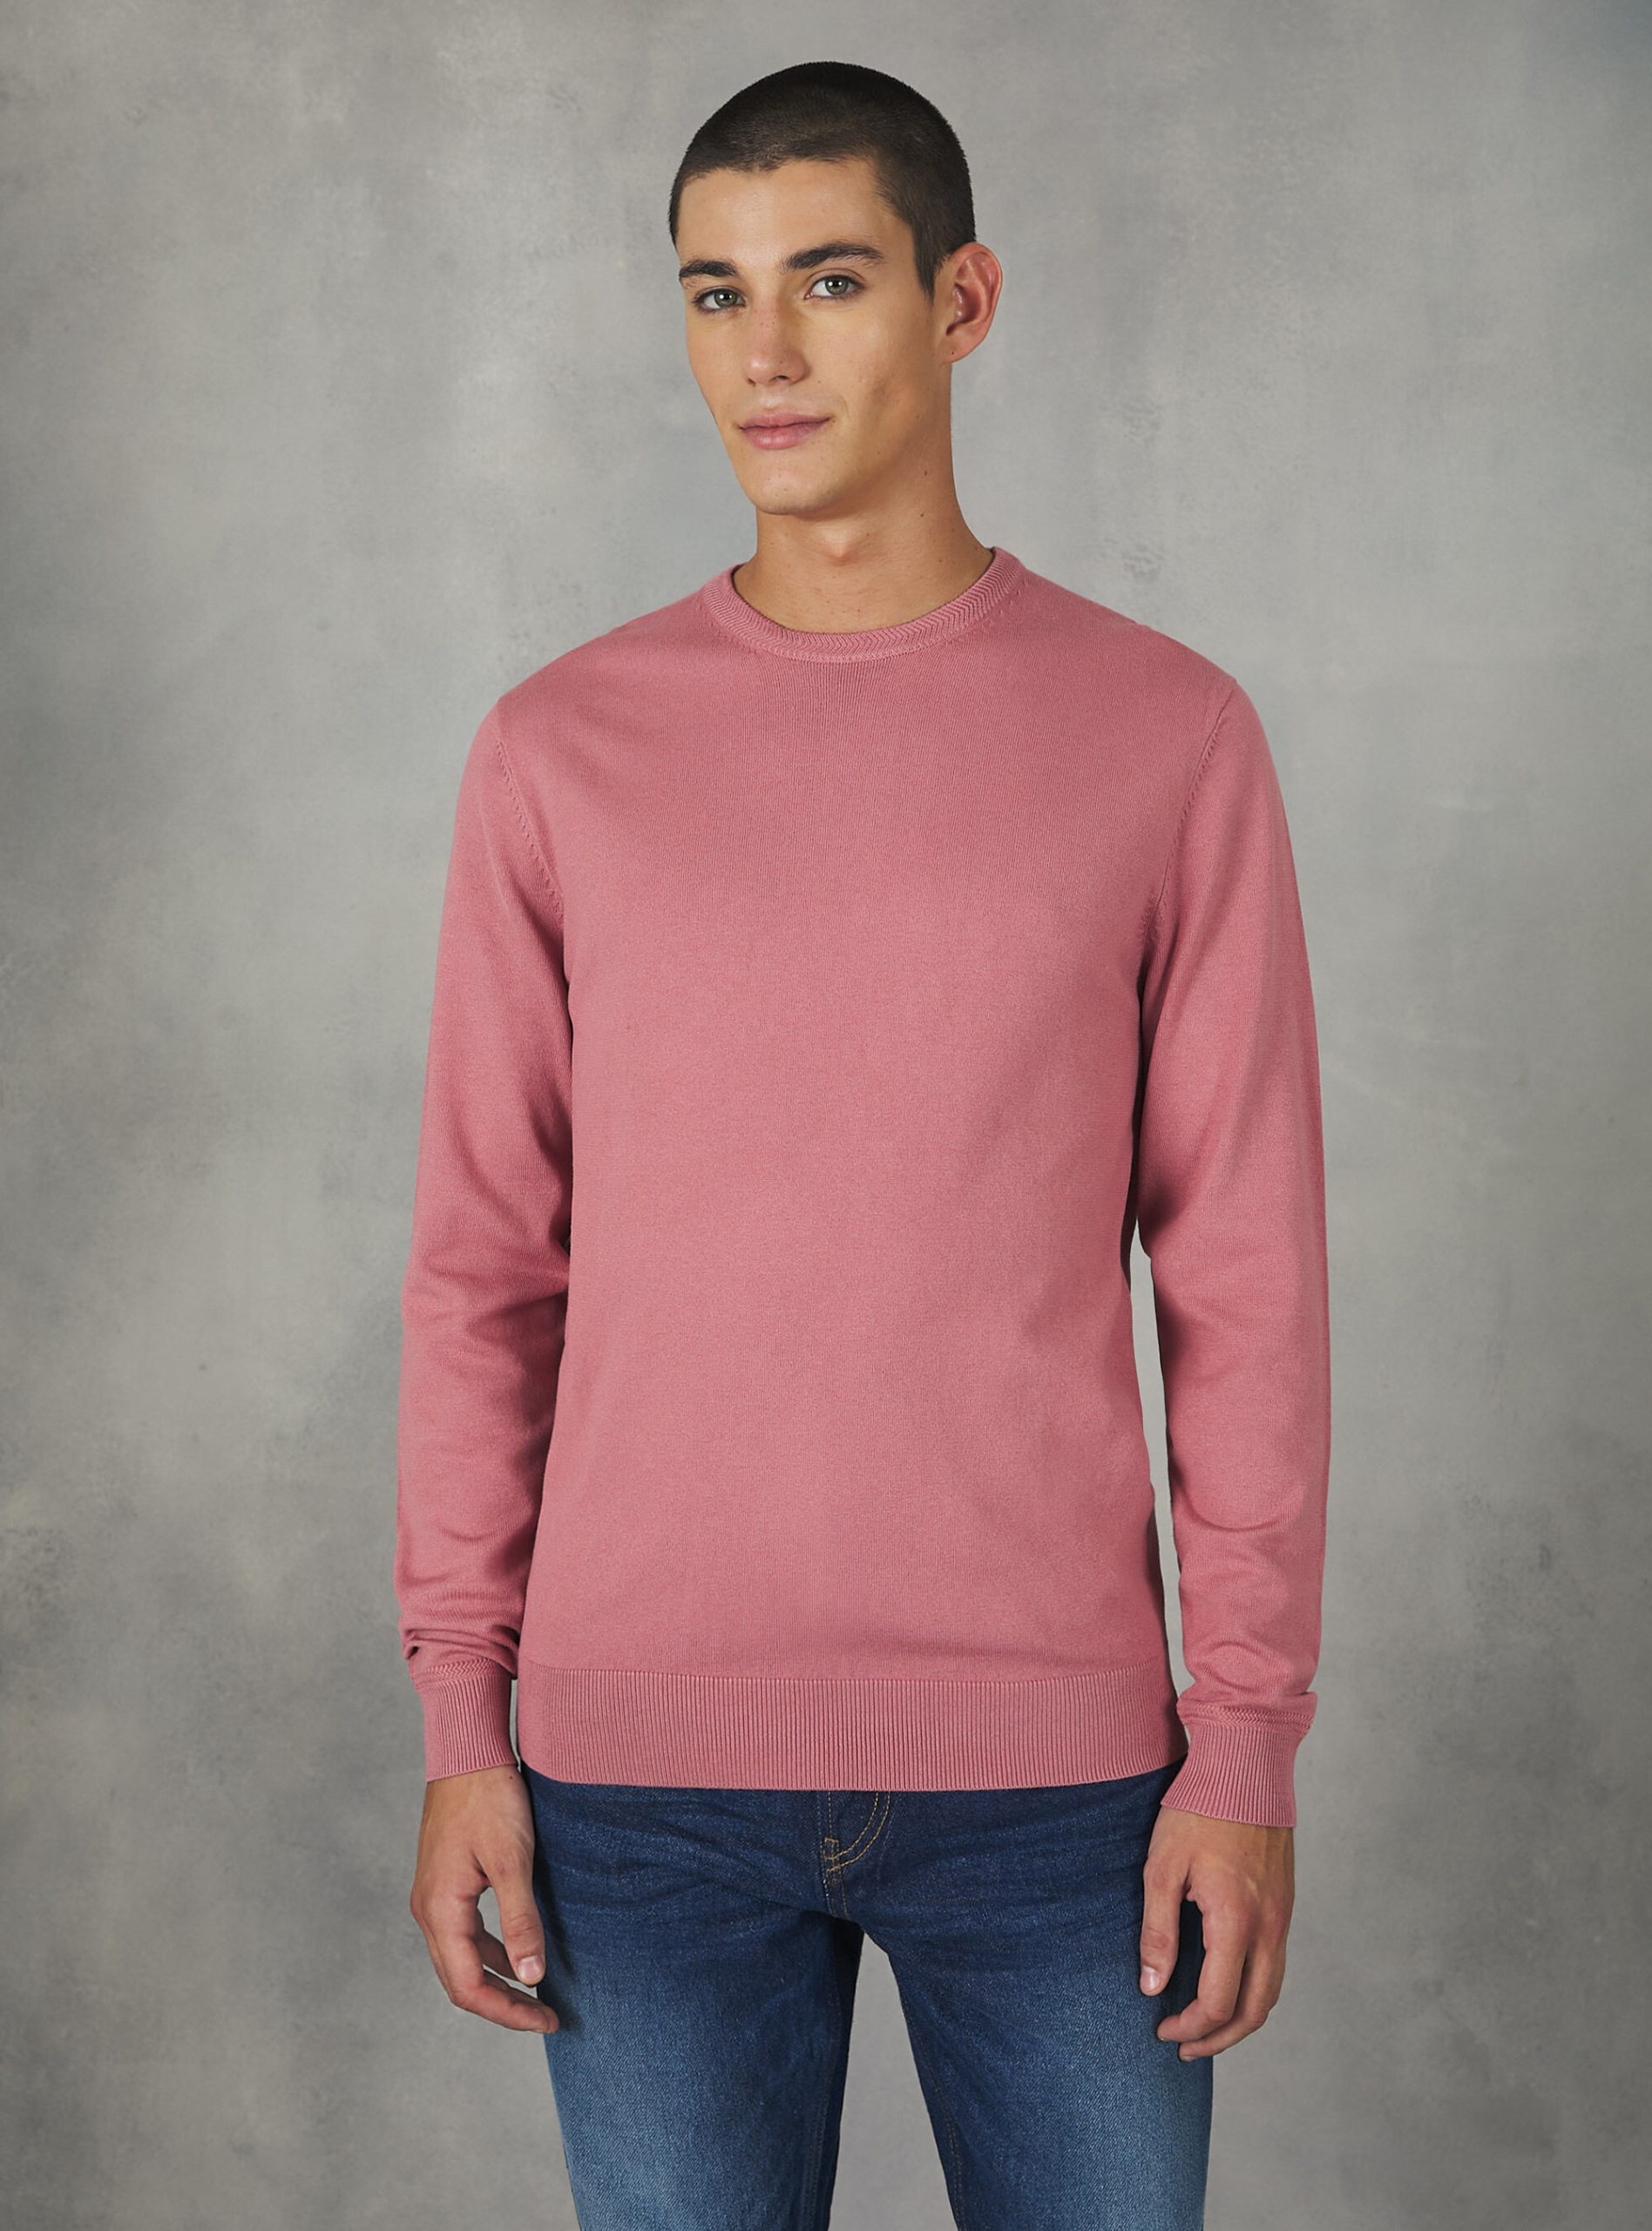 Nachschub Round-Neck Pullover Made Of Sustainable Viscose Ecovero Strickwaren Pk2 Pink Medium Männer Alcott – 1